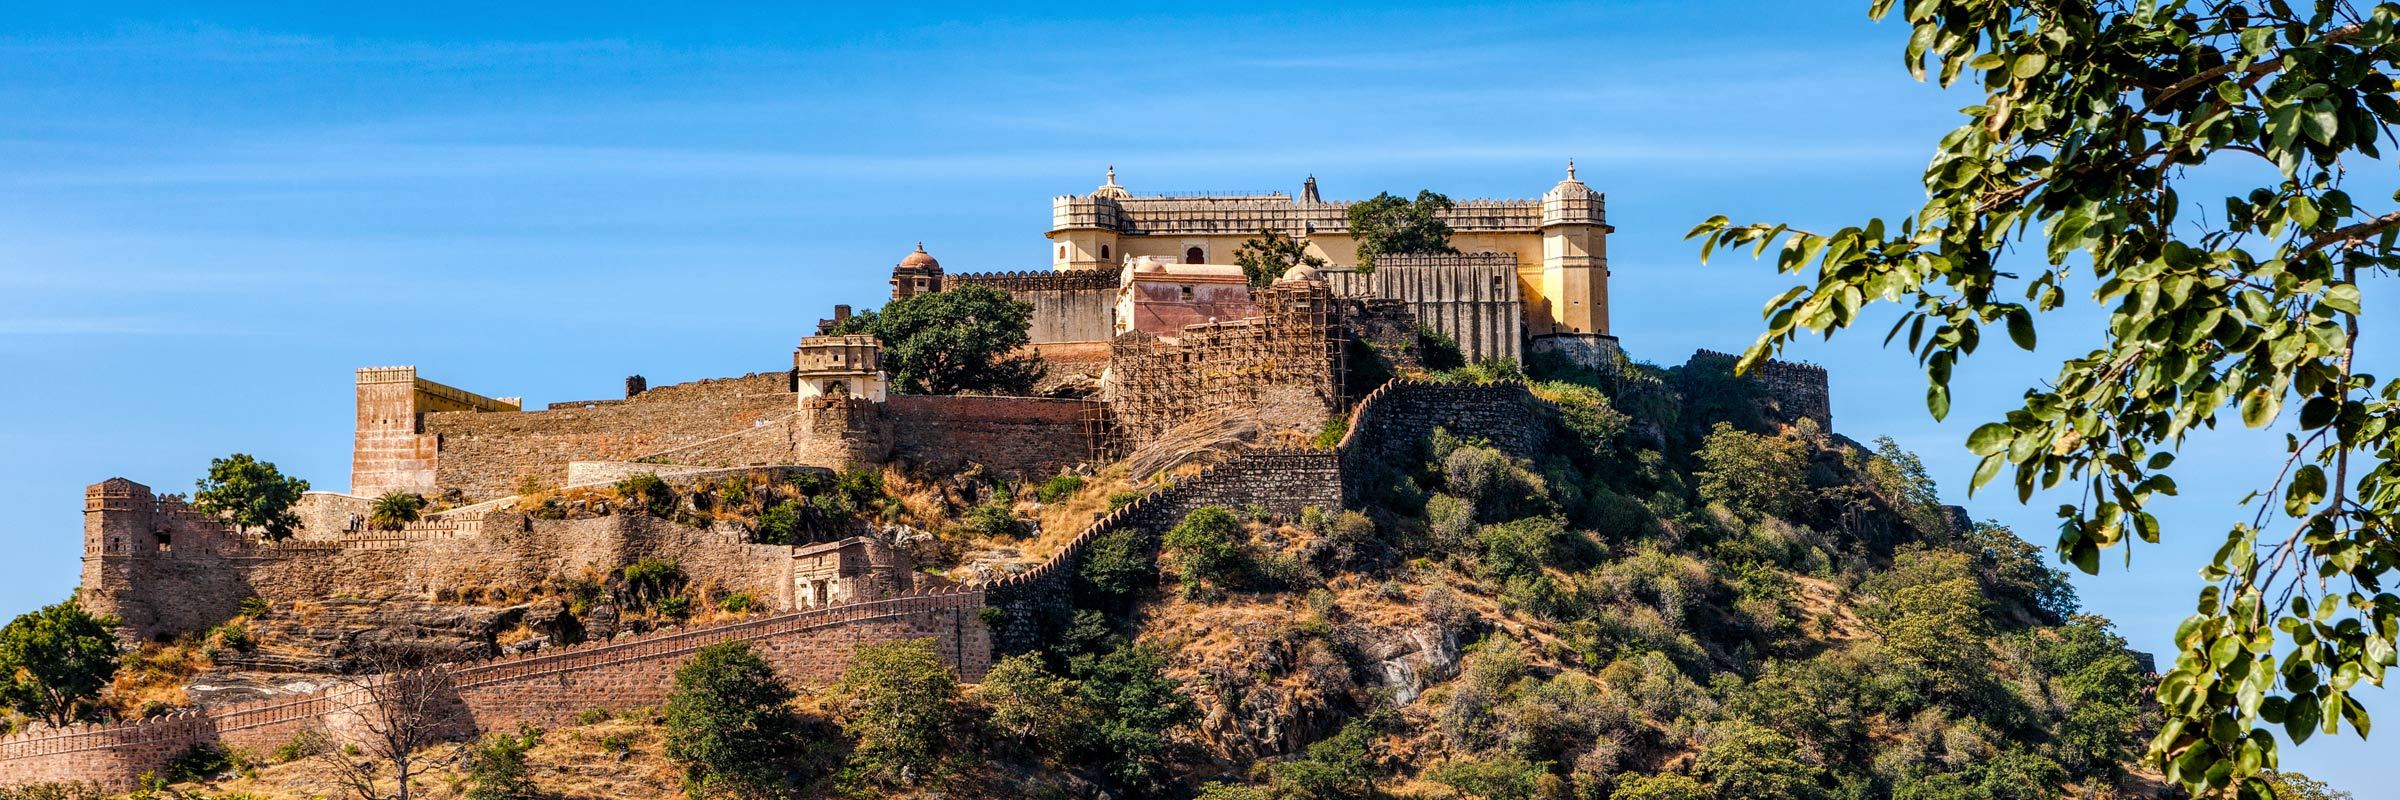 Kumbhalgarh Fort Wall Rajasthan India Stock Photo 1378086938 | Shutterstock